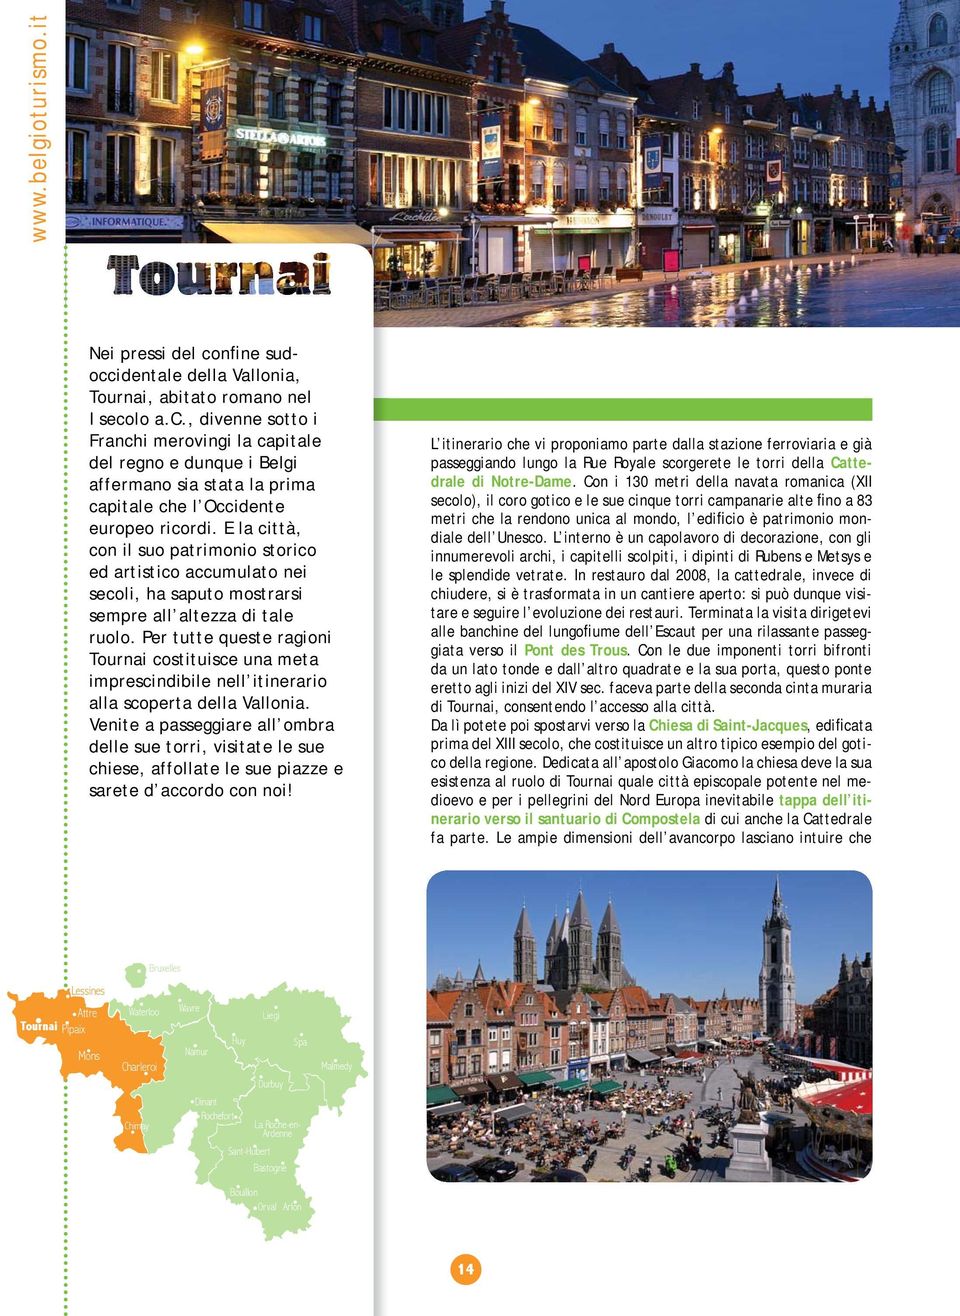 Per tutte queste ragioni Tournai costituisce una meta imprescindibile nell itinerario alla scoperta della Vallonia.